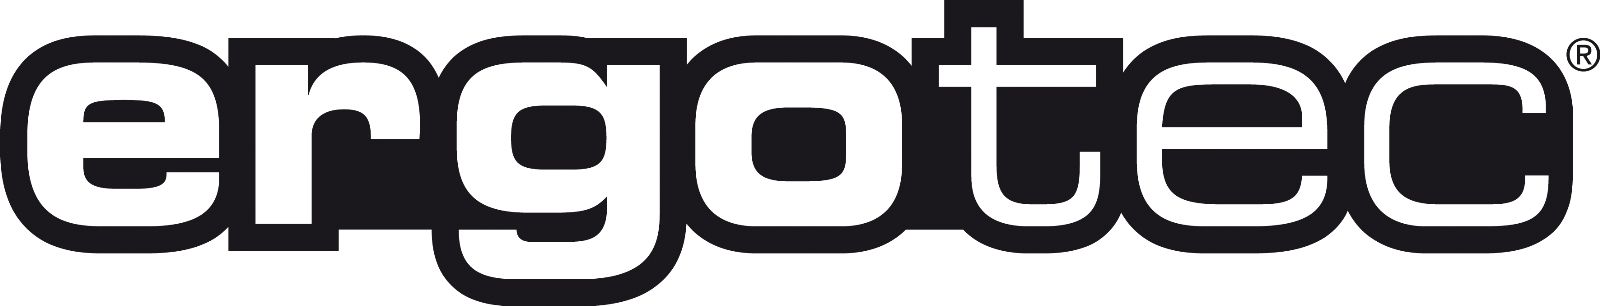 Ergotec-logo-fietscorner